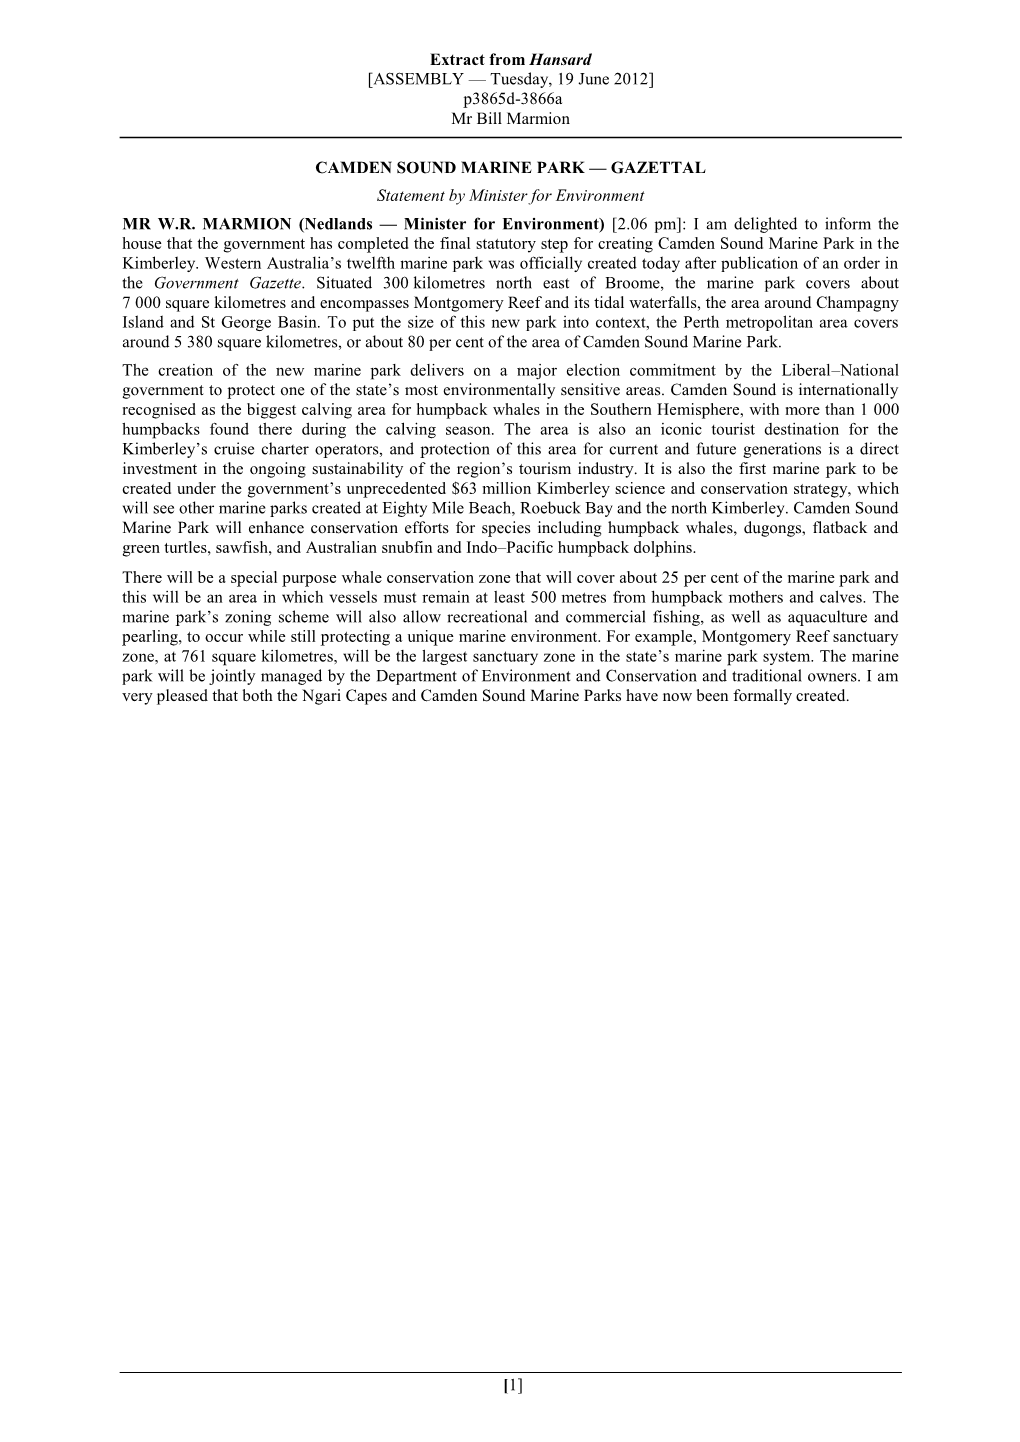 CAMDEN SOUND MARINE PARK — GAZETTAL Statement by Minister for Environment MR W.R